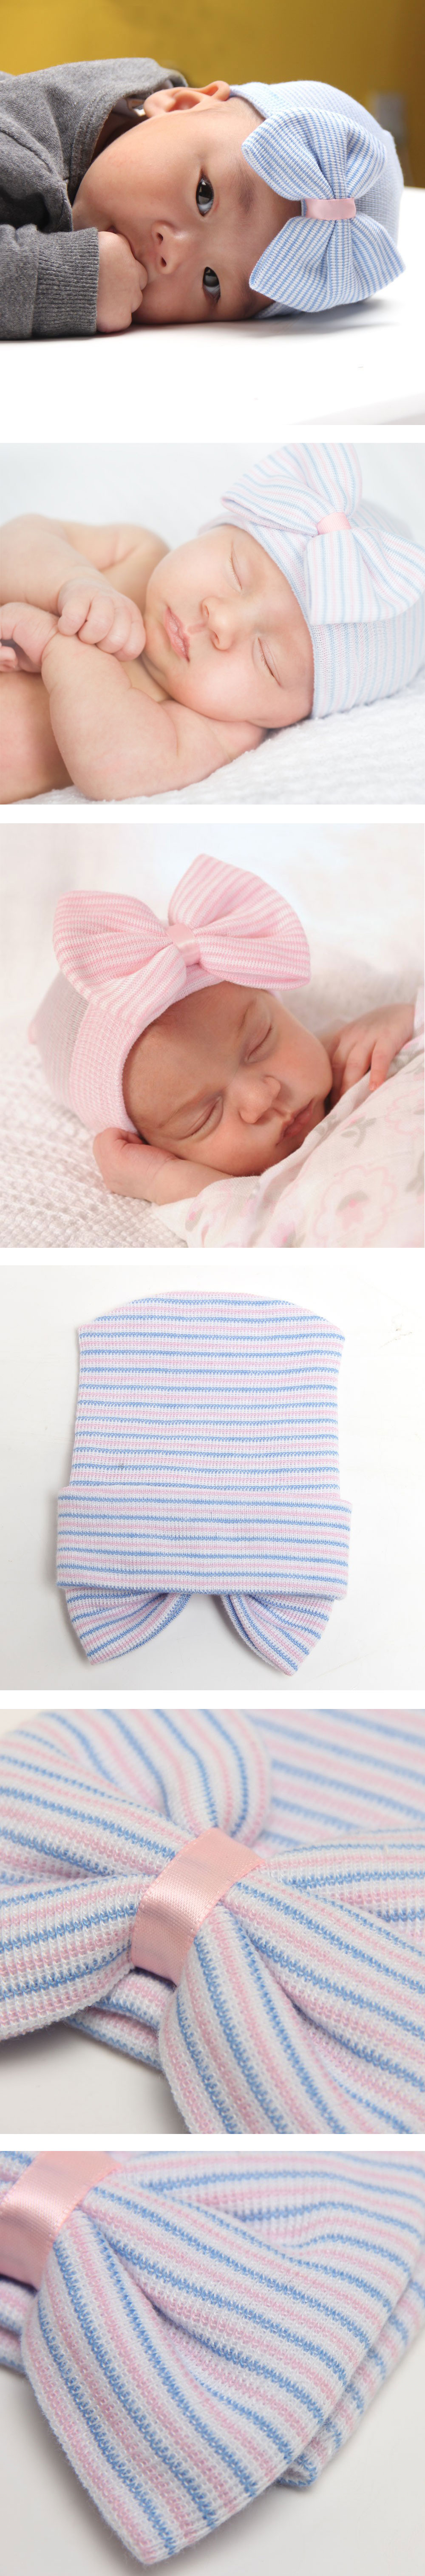 Silk-Newborn-Infant-Toddler-Girls-Baby-Bedding-Head-Accessoriess-Hair-Stripe-Bowknot-Beanie-Hat-Comf-1020581